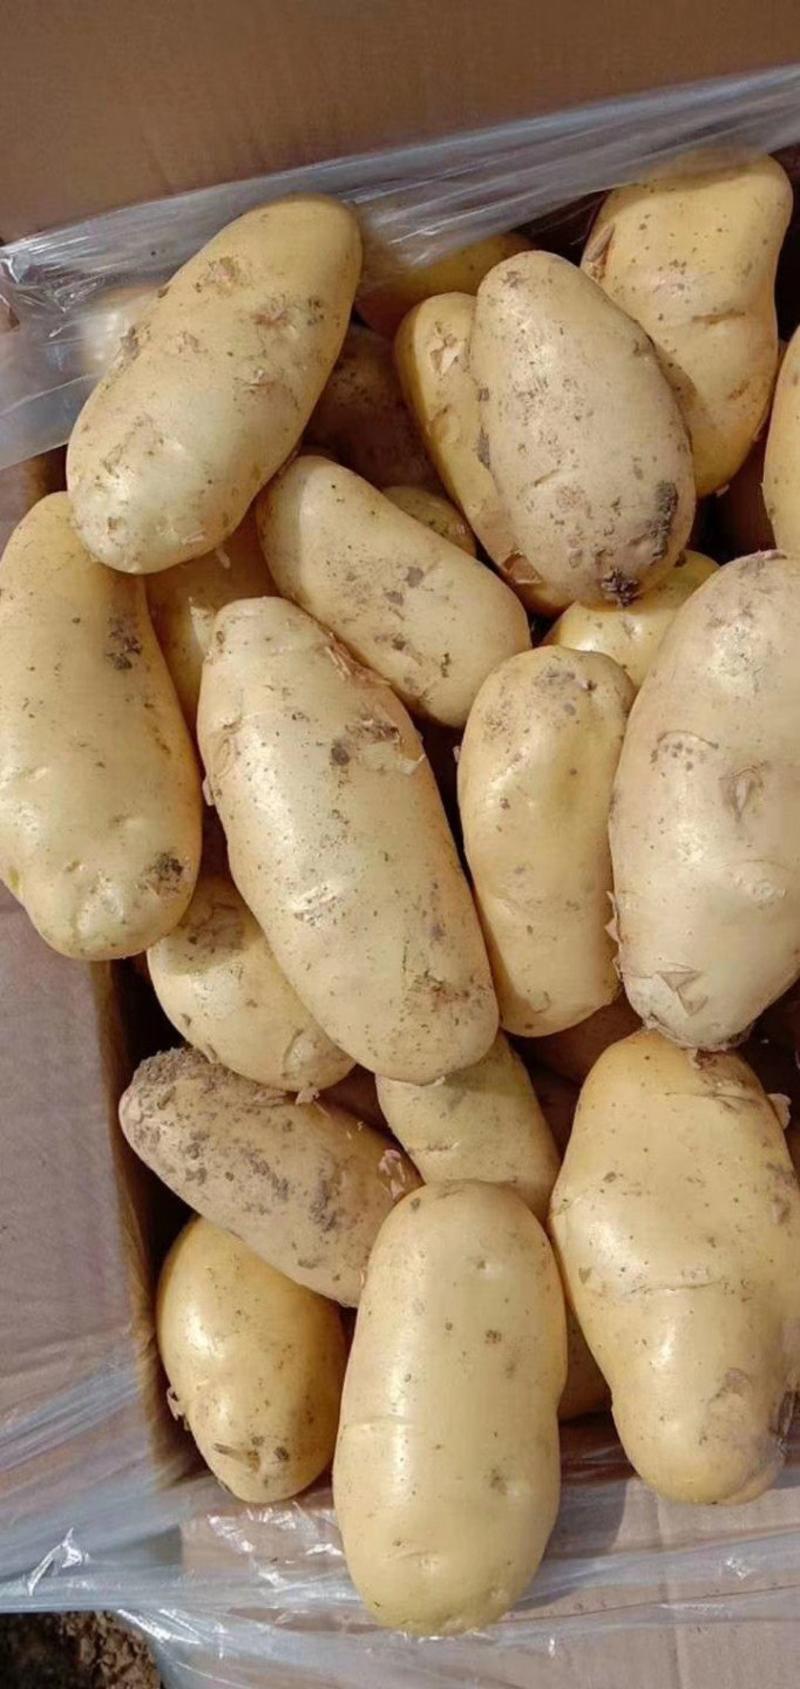 河北土豆唐山菏兰土豆品种齐全产地直供欢迎来电咨询订购